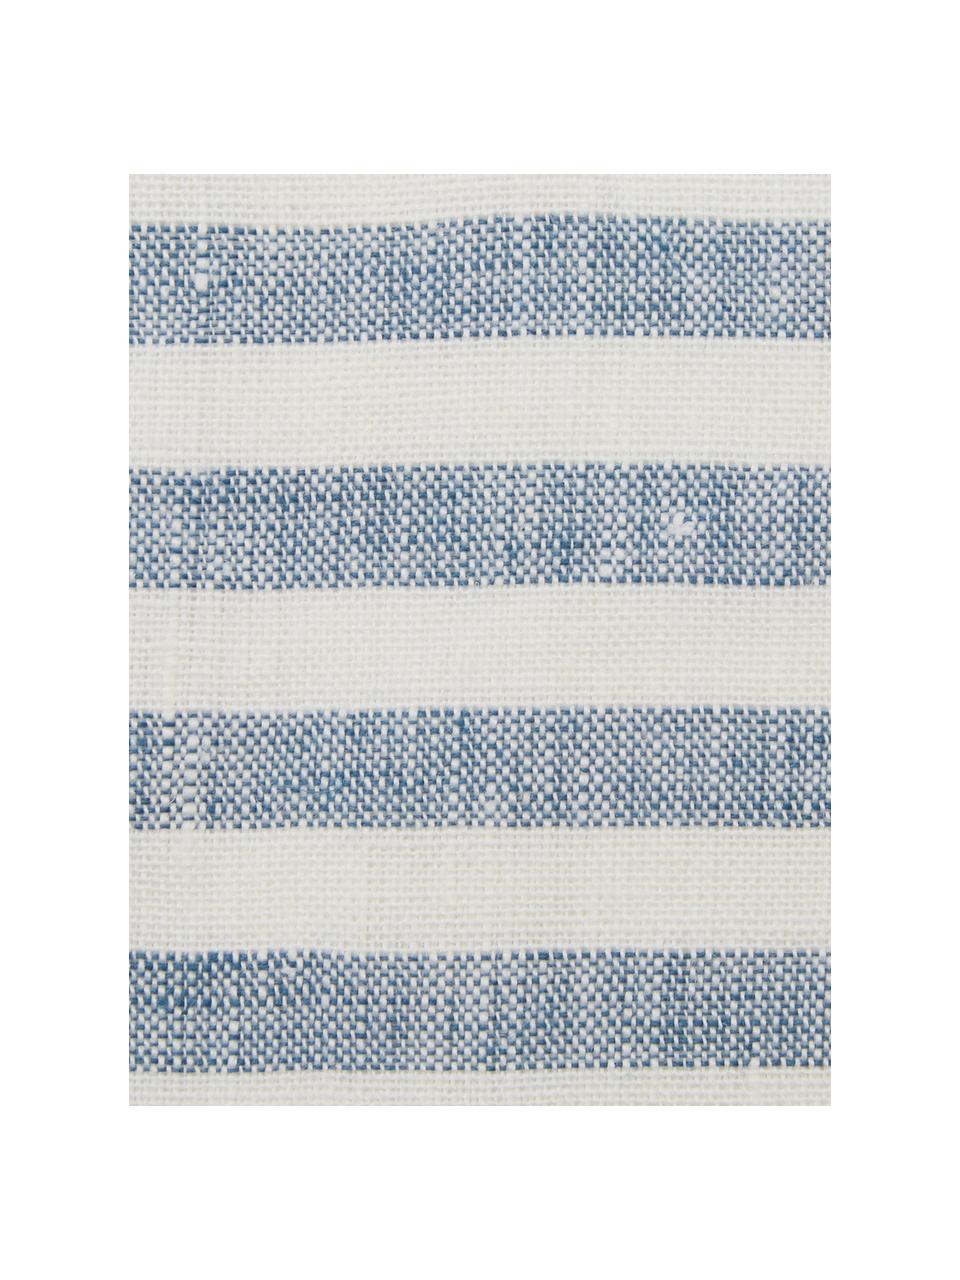 Linnen placemats Solami, 2 stuks, Linnen, Lichtblauw, wit, 35 x 45 cm